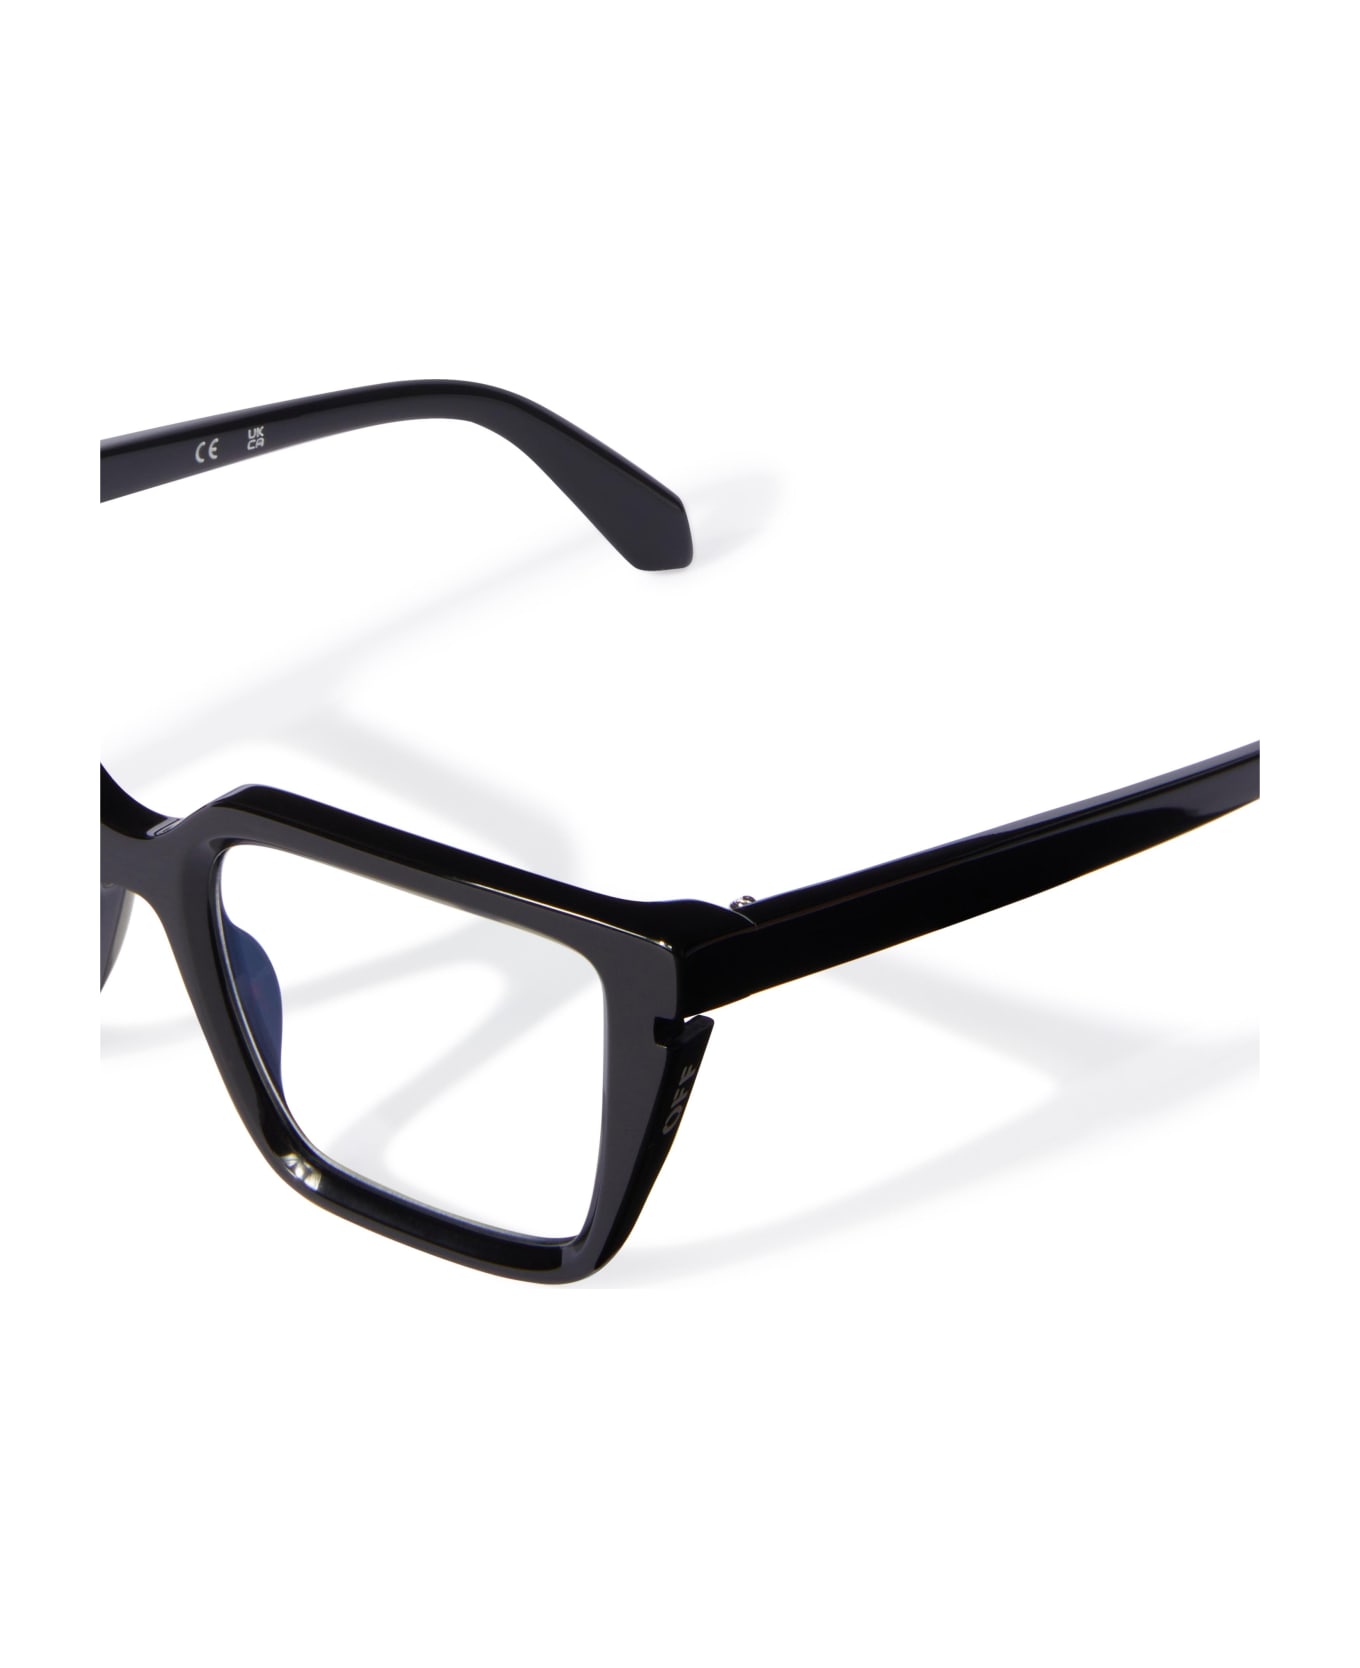 Off-White Glasses - Nero アイウェア